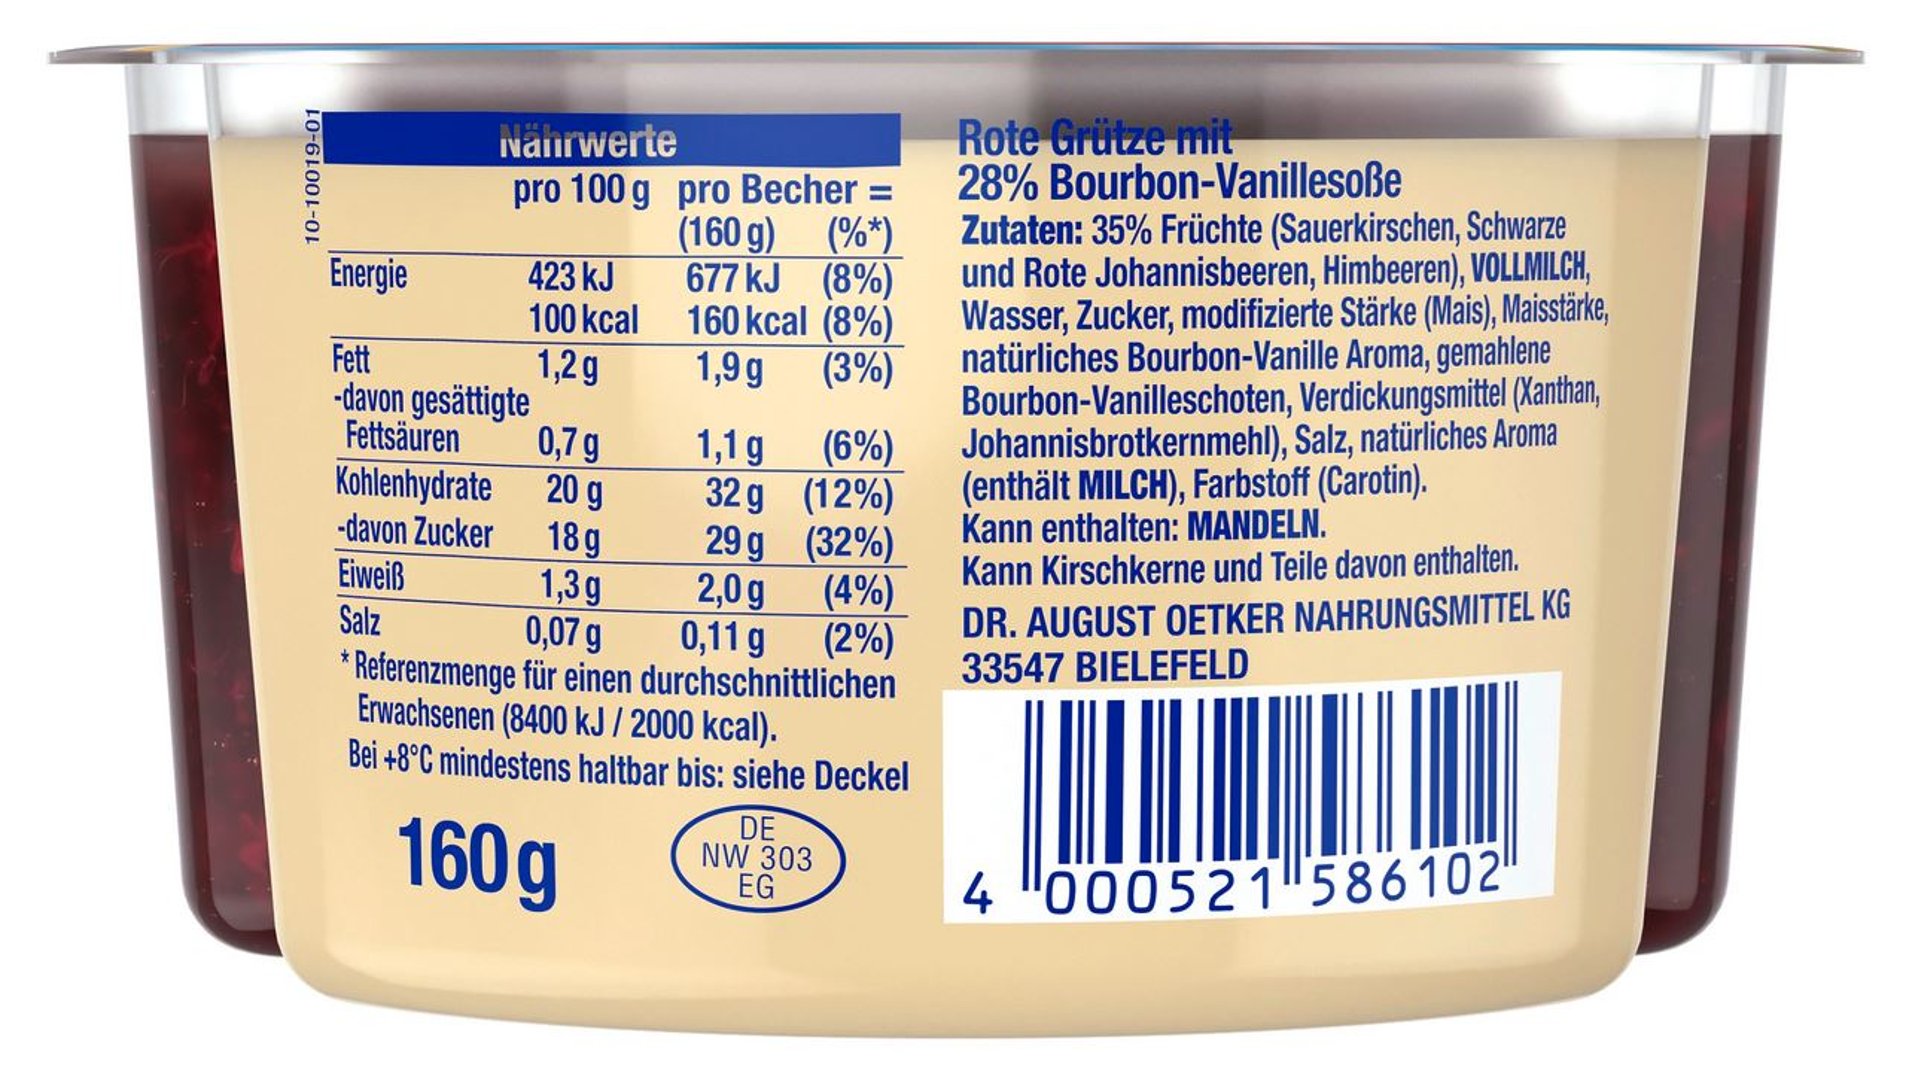 Dr. Oetker - Rote Grütze mit Bourbon-Vanillesoße 1,2 % Fett - 1 x 160 g Becher